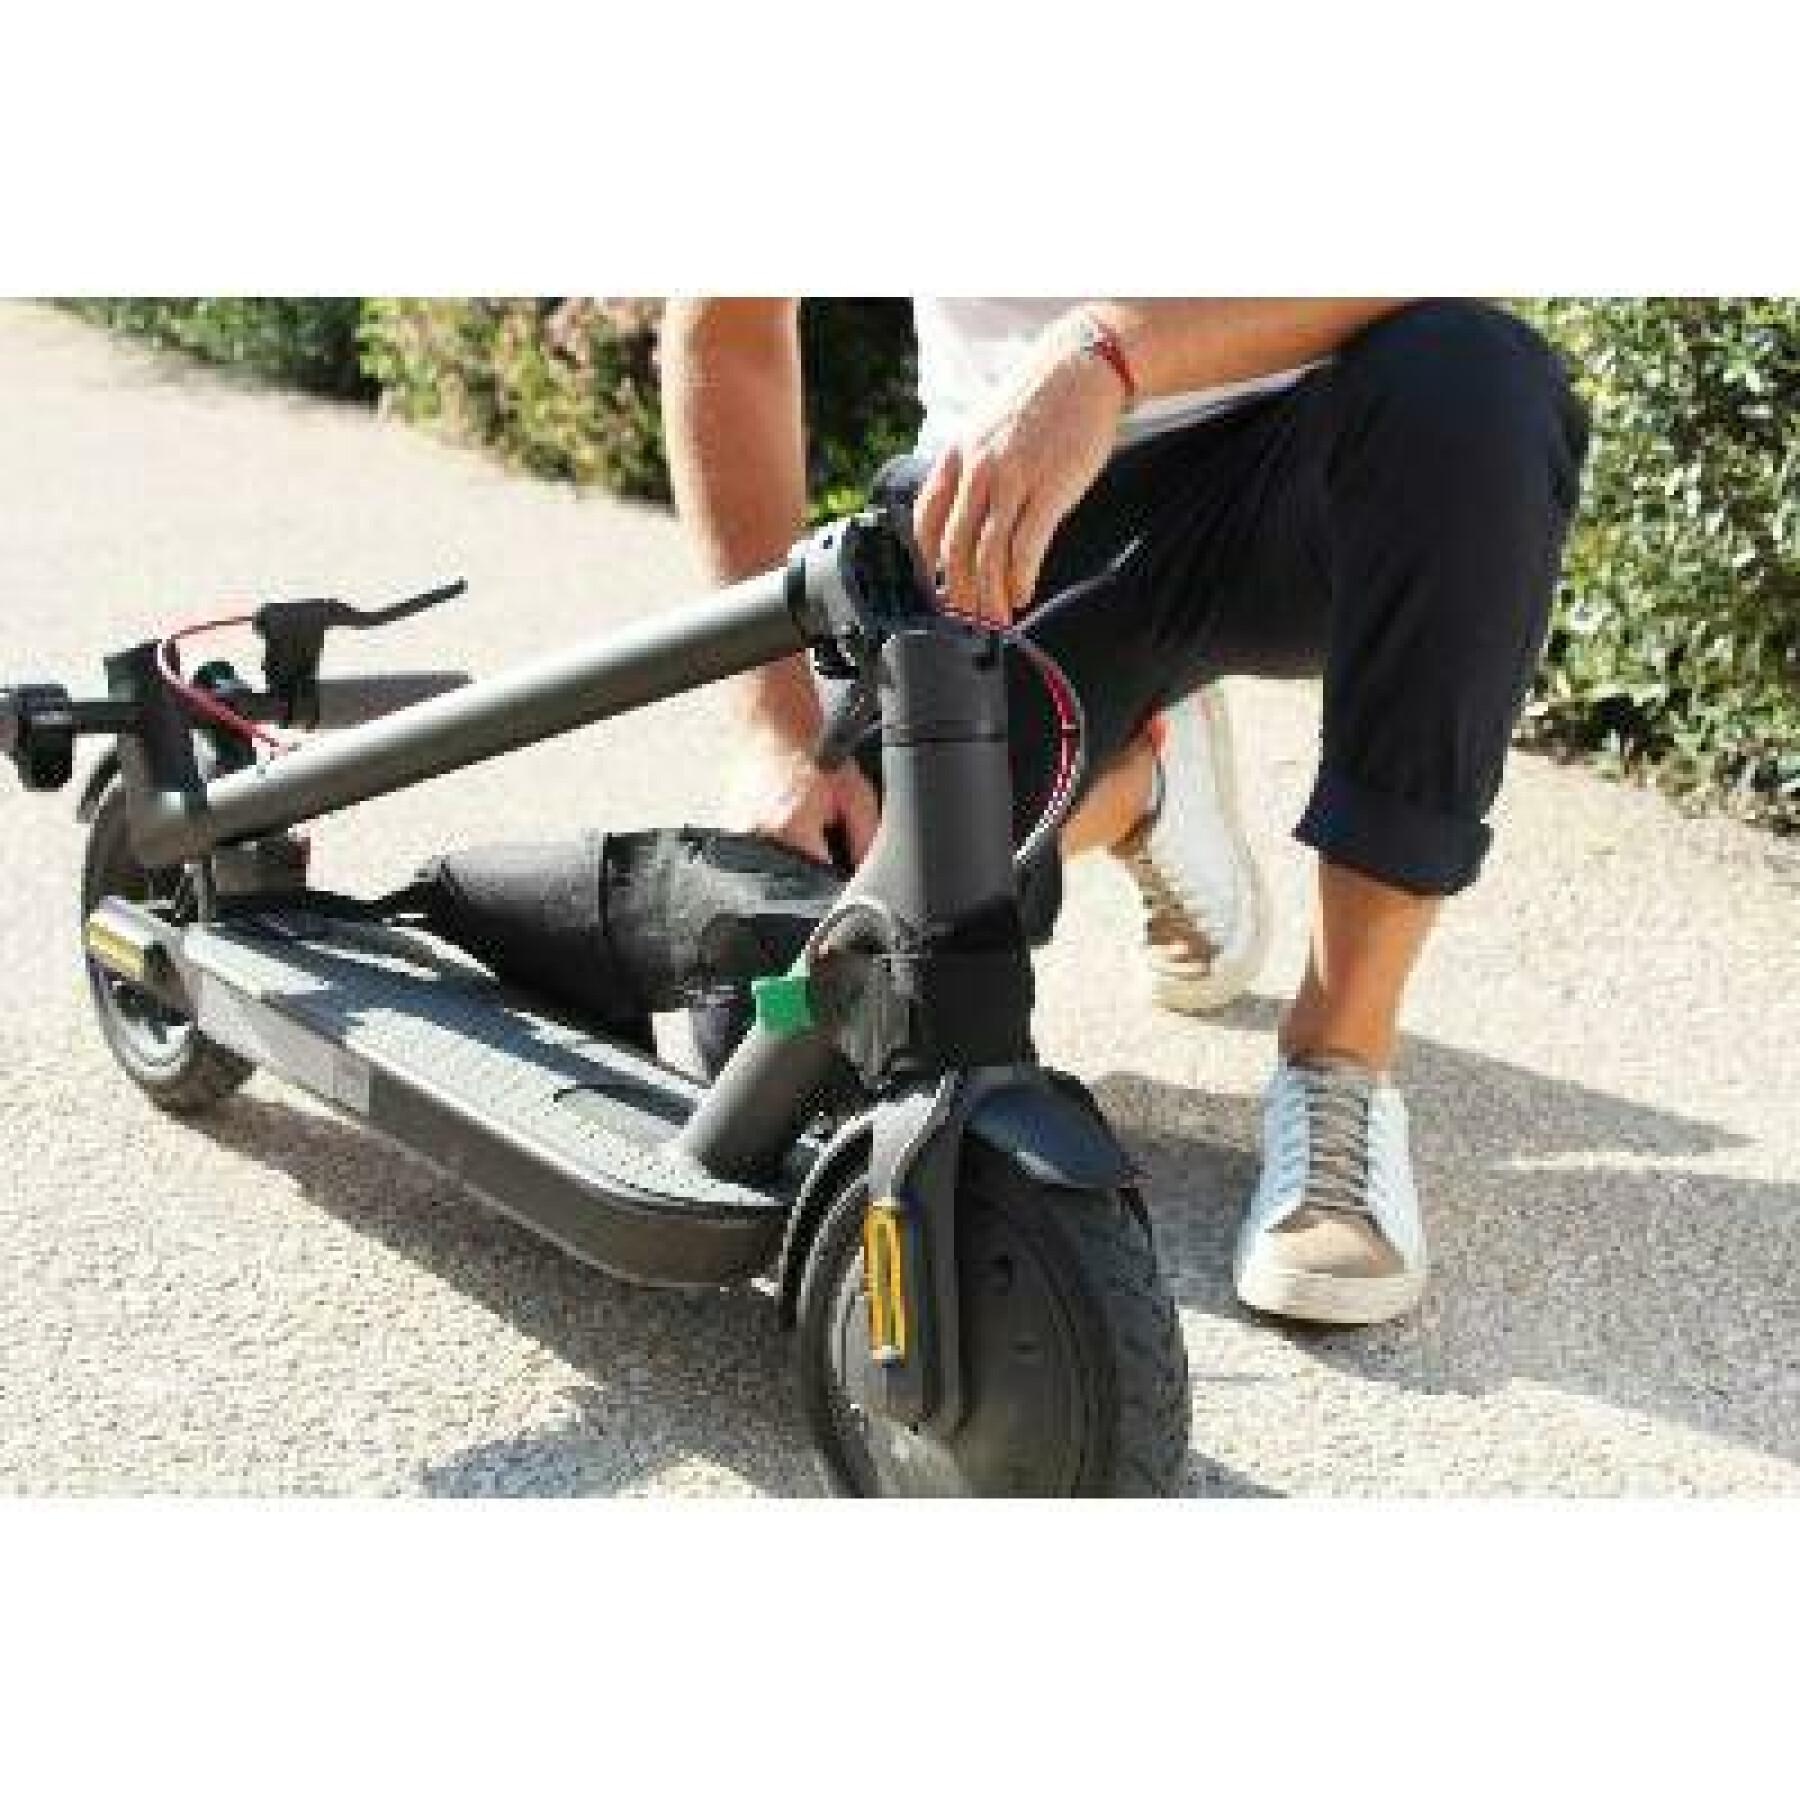 Sistema universal para transportar facilmente a sua scooter Wantalis trotback